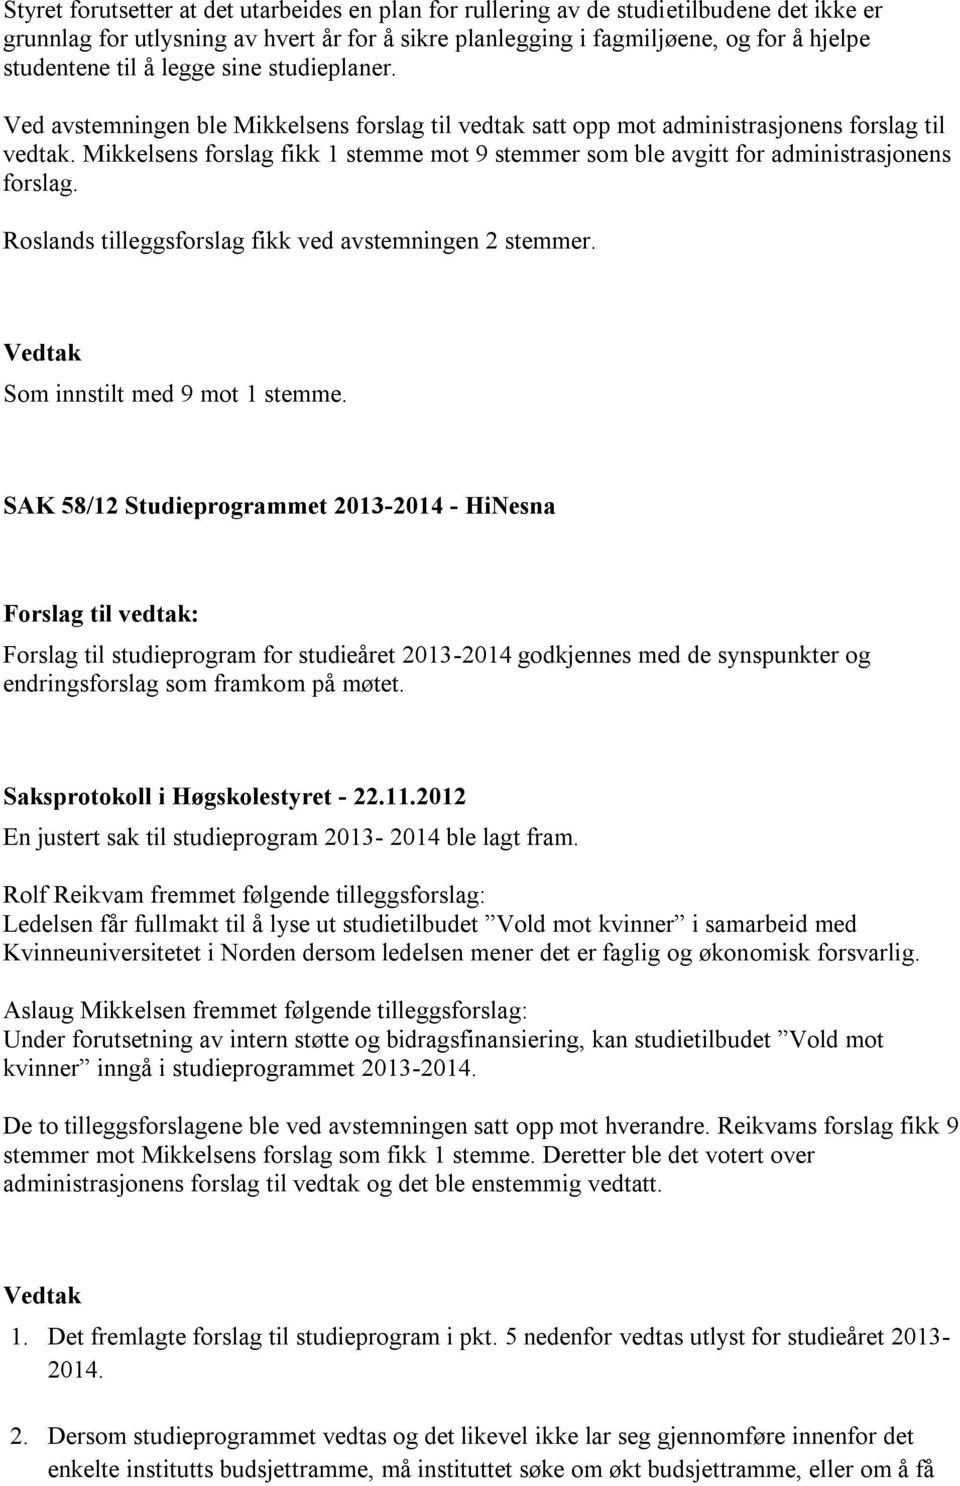 Mikkelsens forslag fikk 1 stemme mot 9 stemmer som ble avgitt for administrasjonens forslag. Roslands tilleggsforslag fikk ved avstemningen 2 stemmer. Som innstilt med 9 mot 1 stemme.